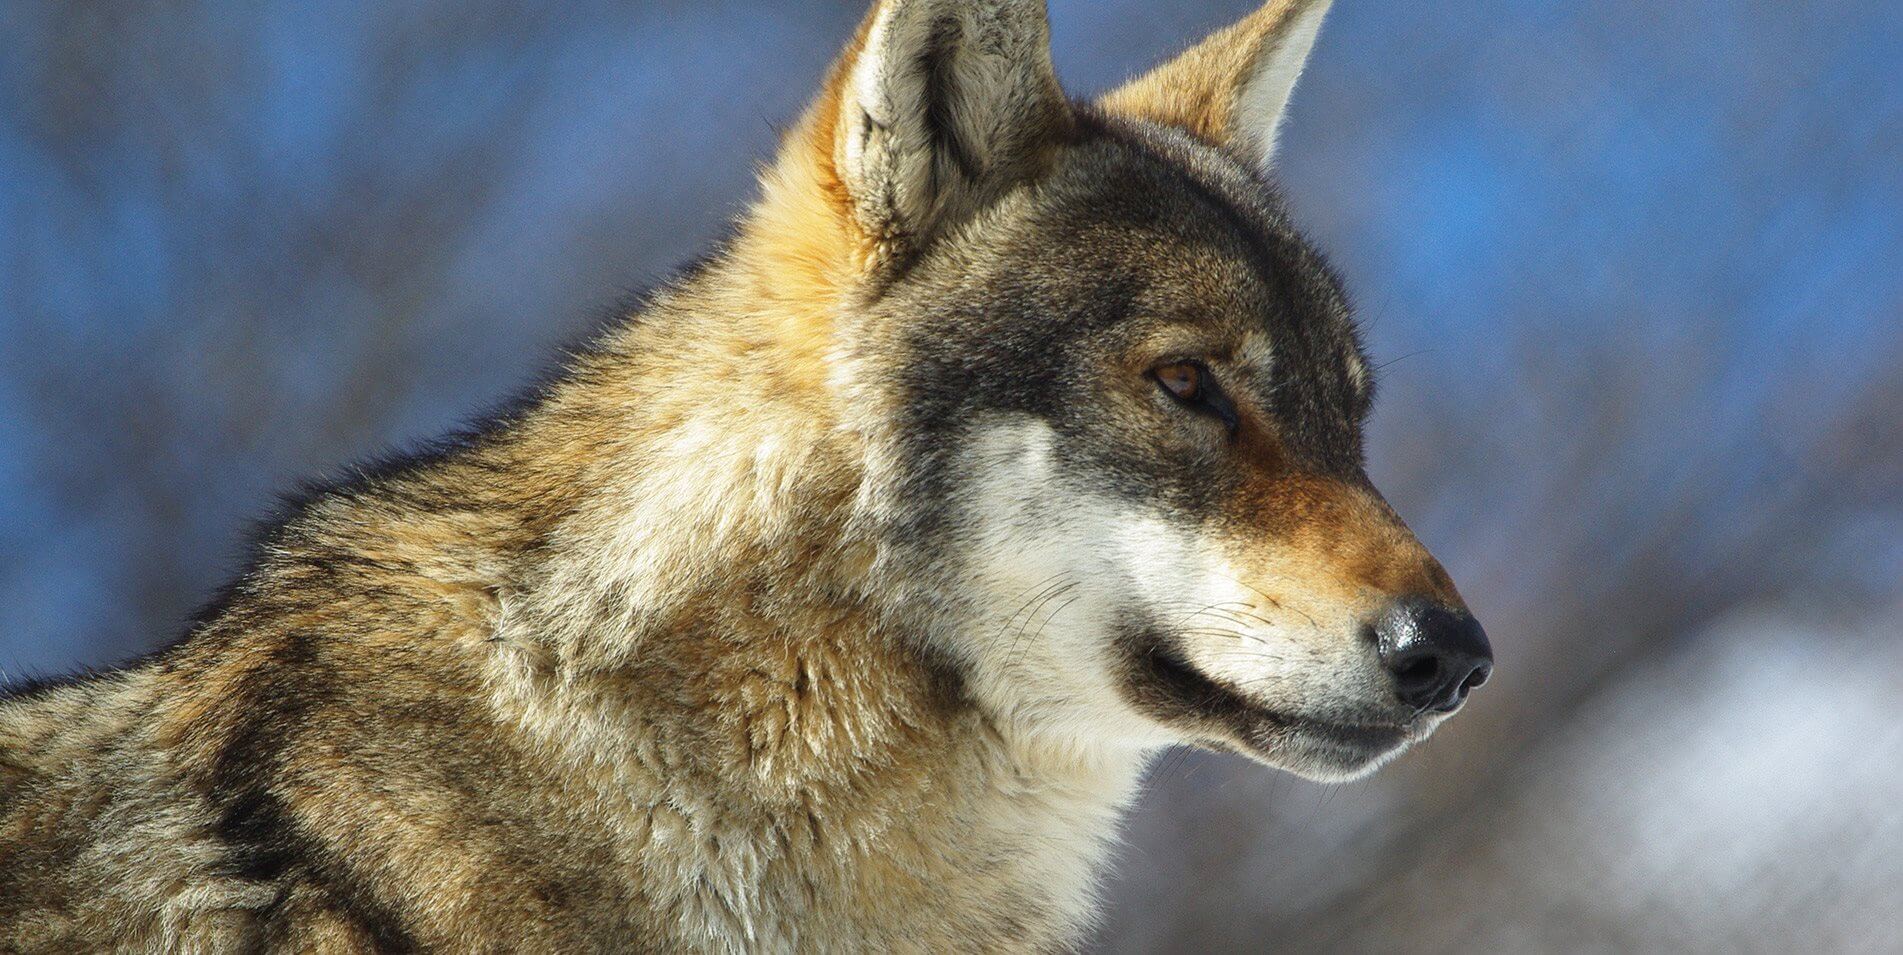 λύκος στην φύση υπό προστασία arktouros | youbehero